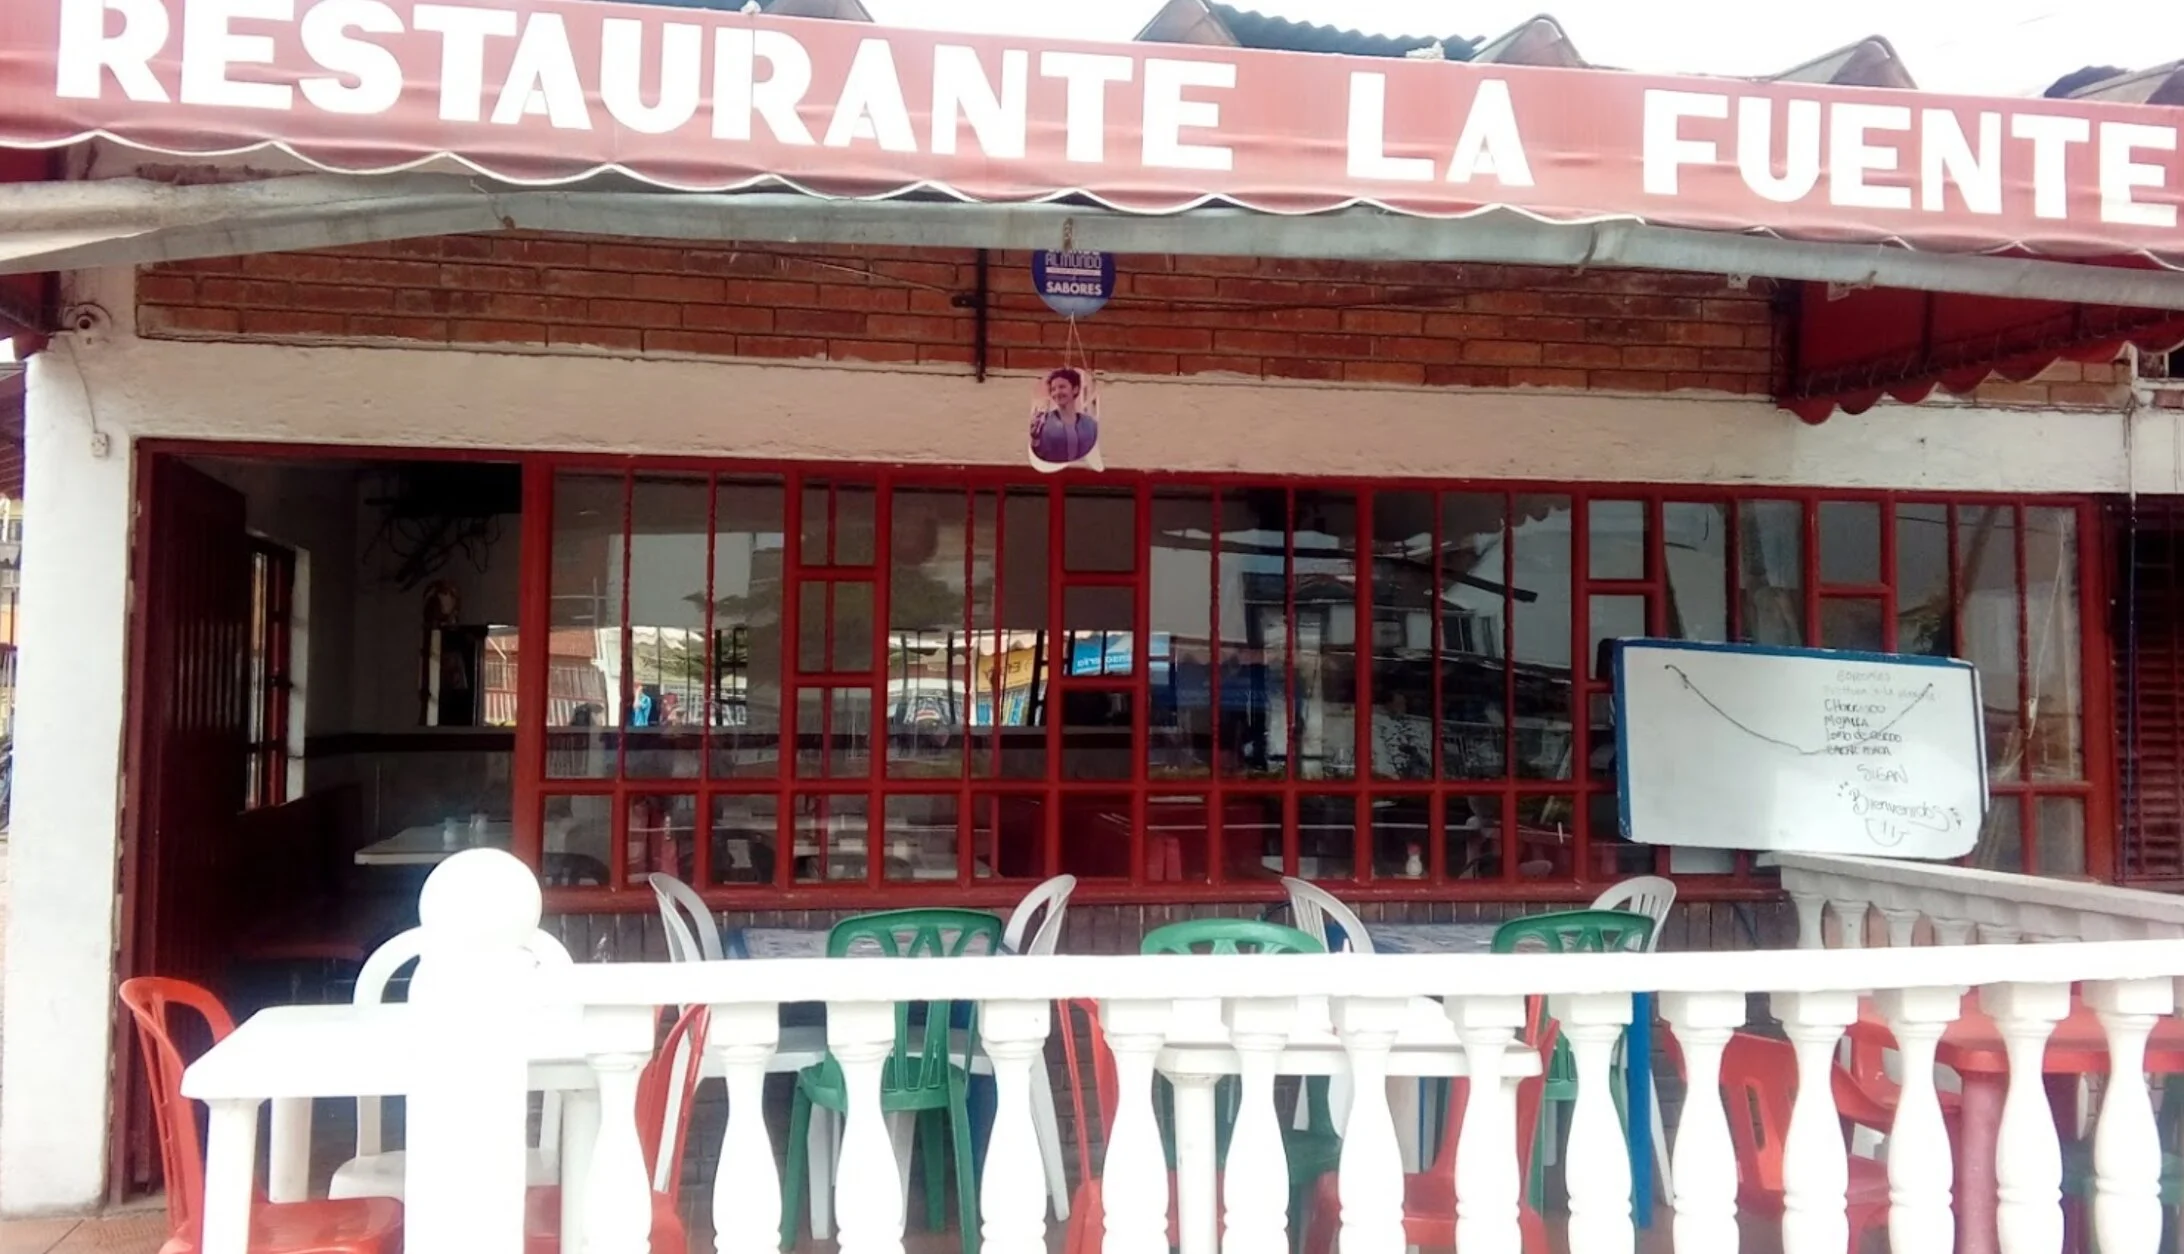 Restaurante La Fuente-7182